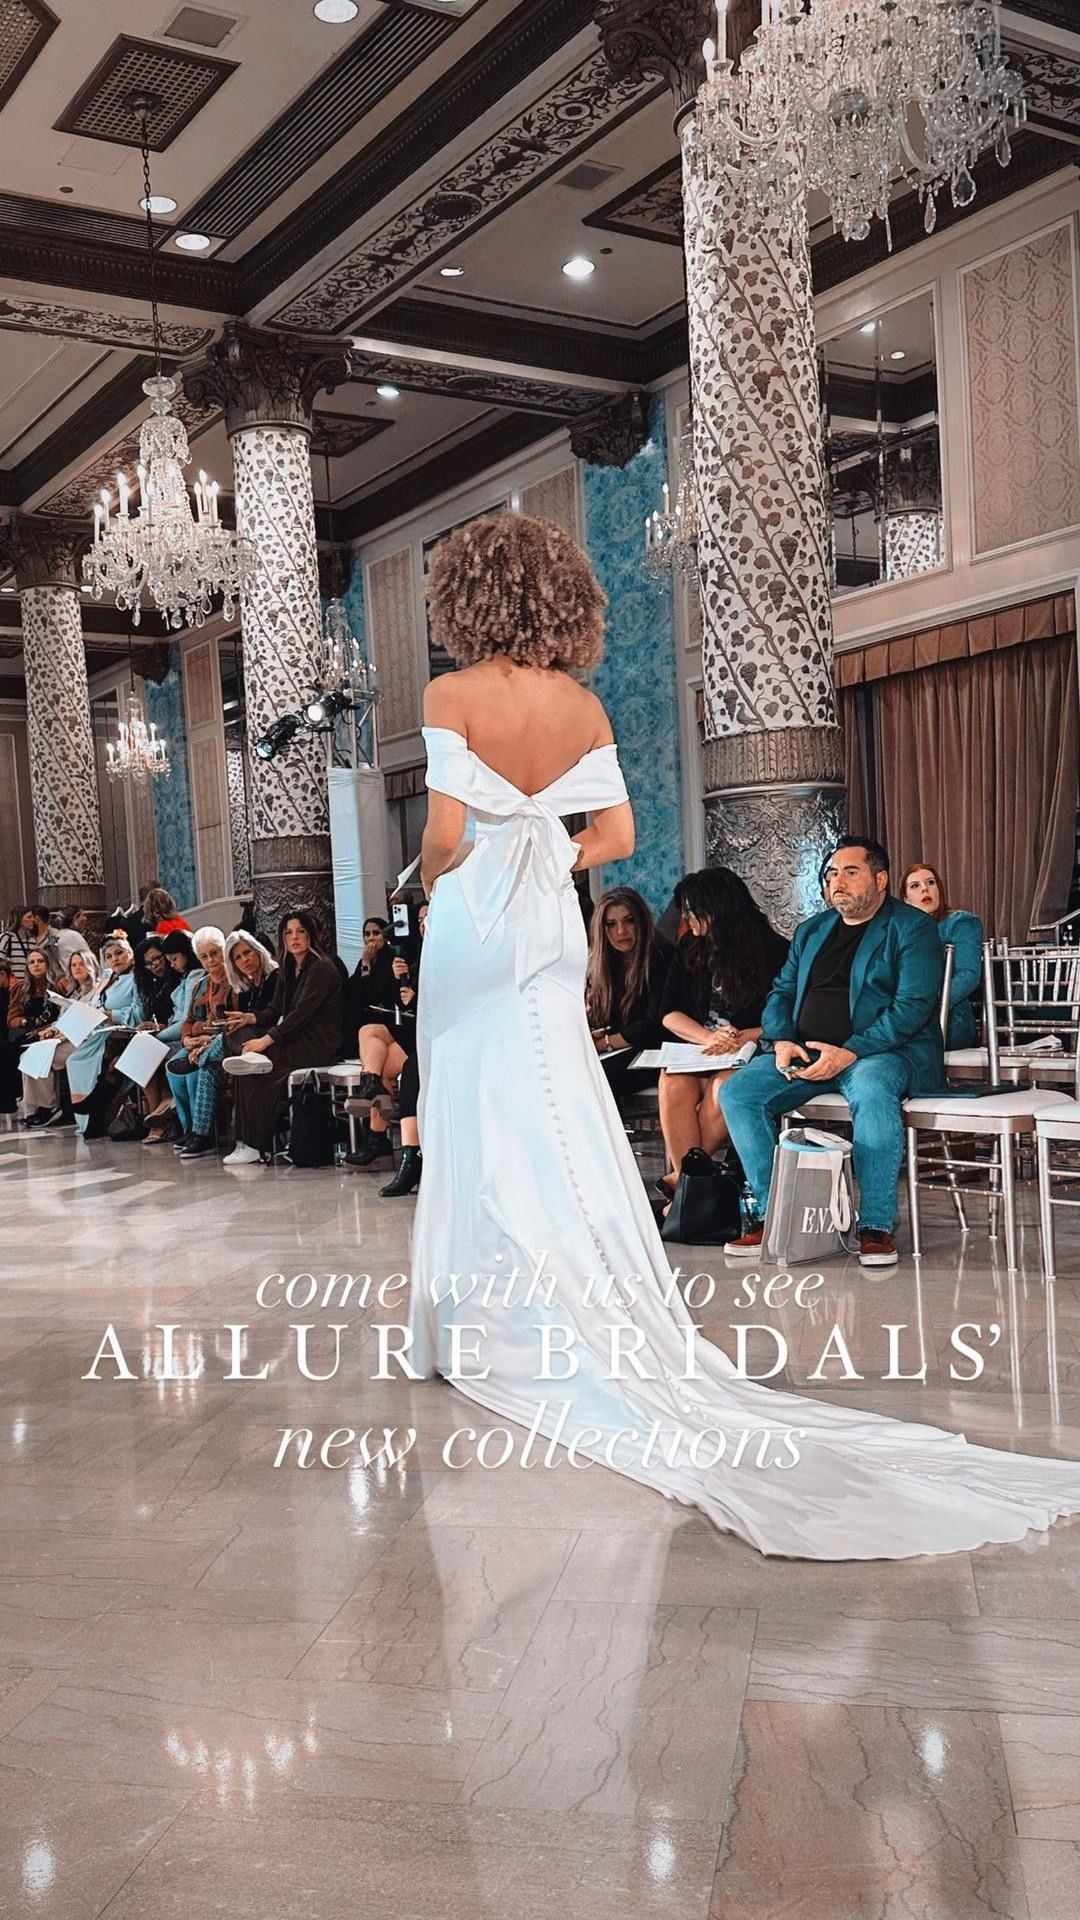 Allure Bridals, Claire's Fashions - A1201